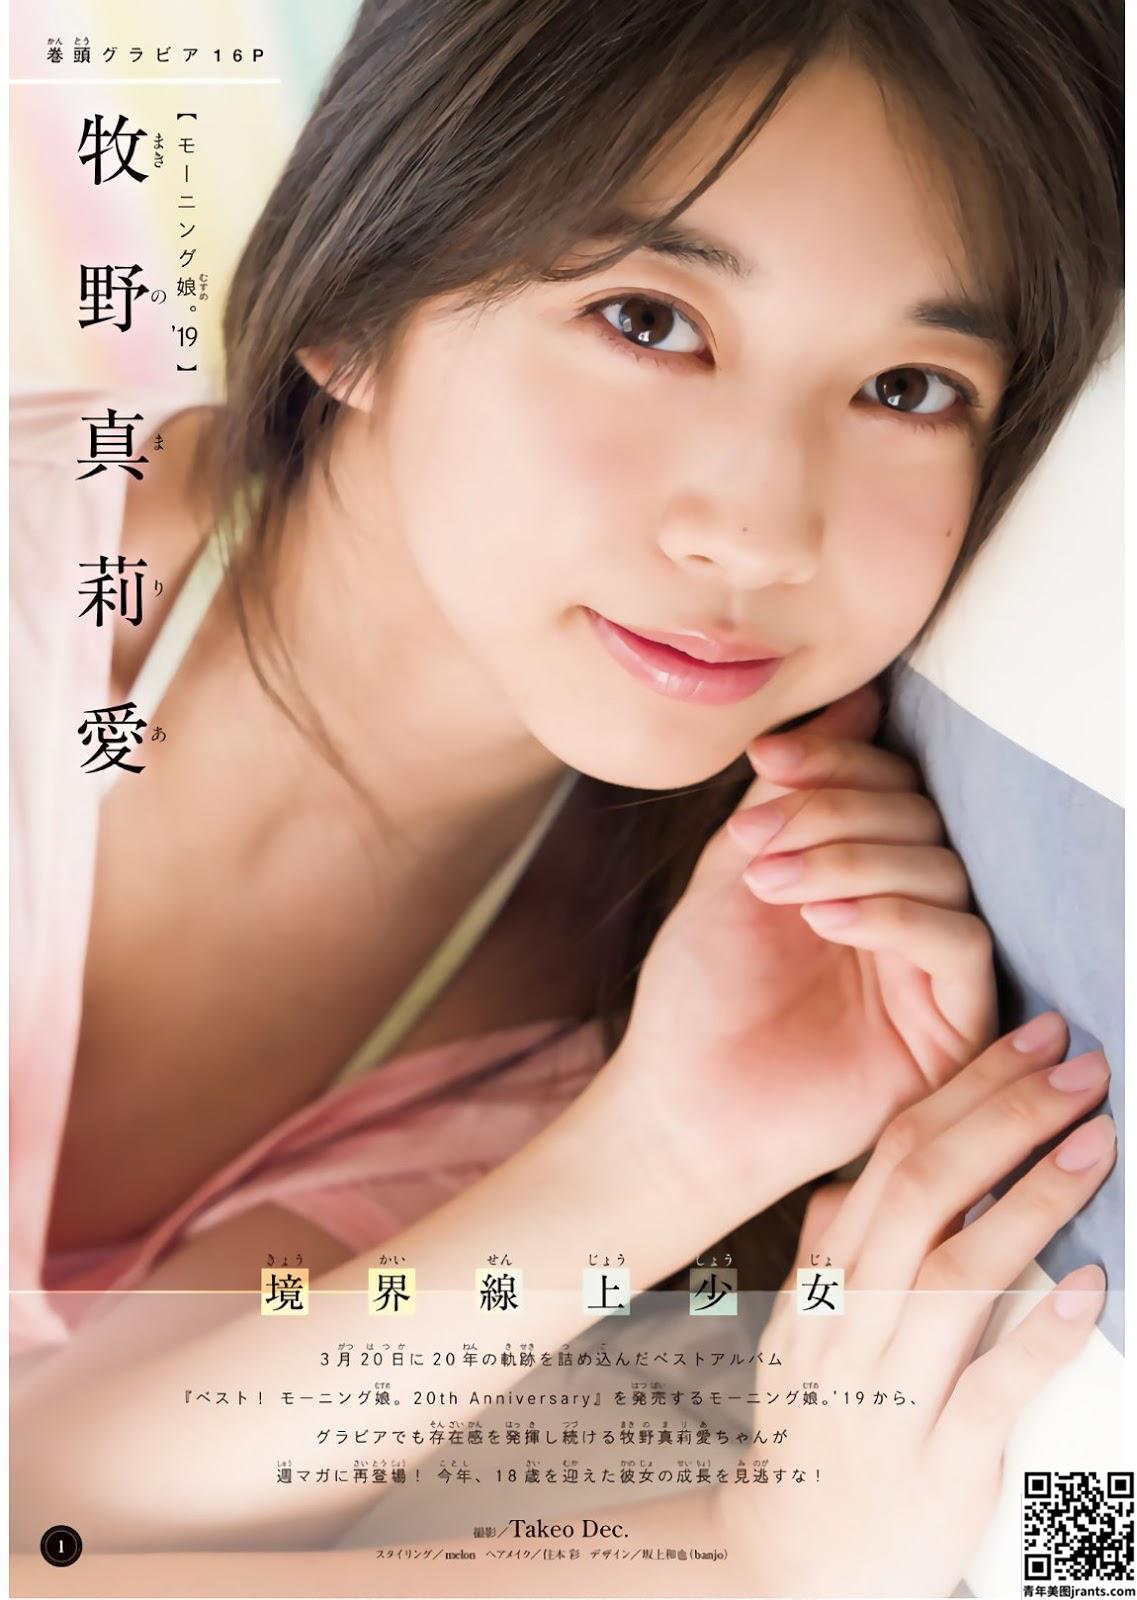 Maria Makino 牧野真莉爱, Shonen Magazine (16P)